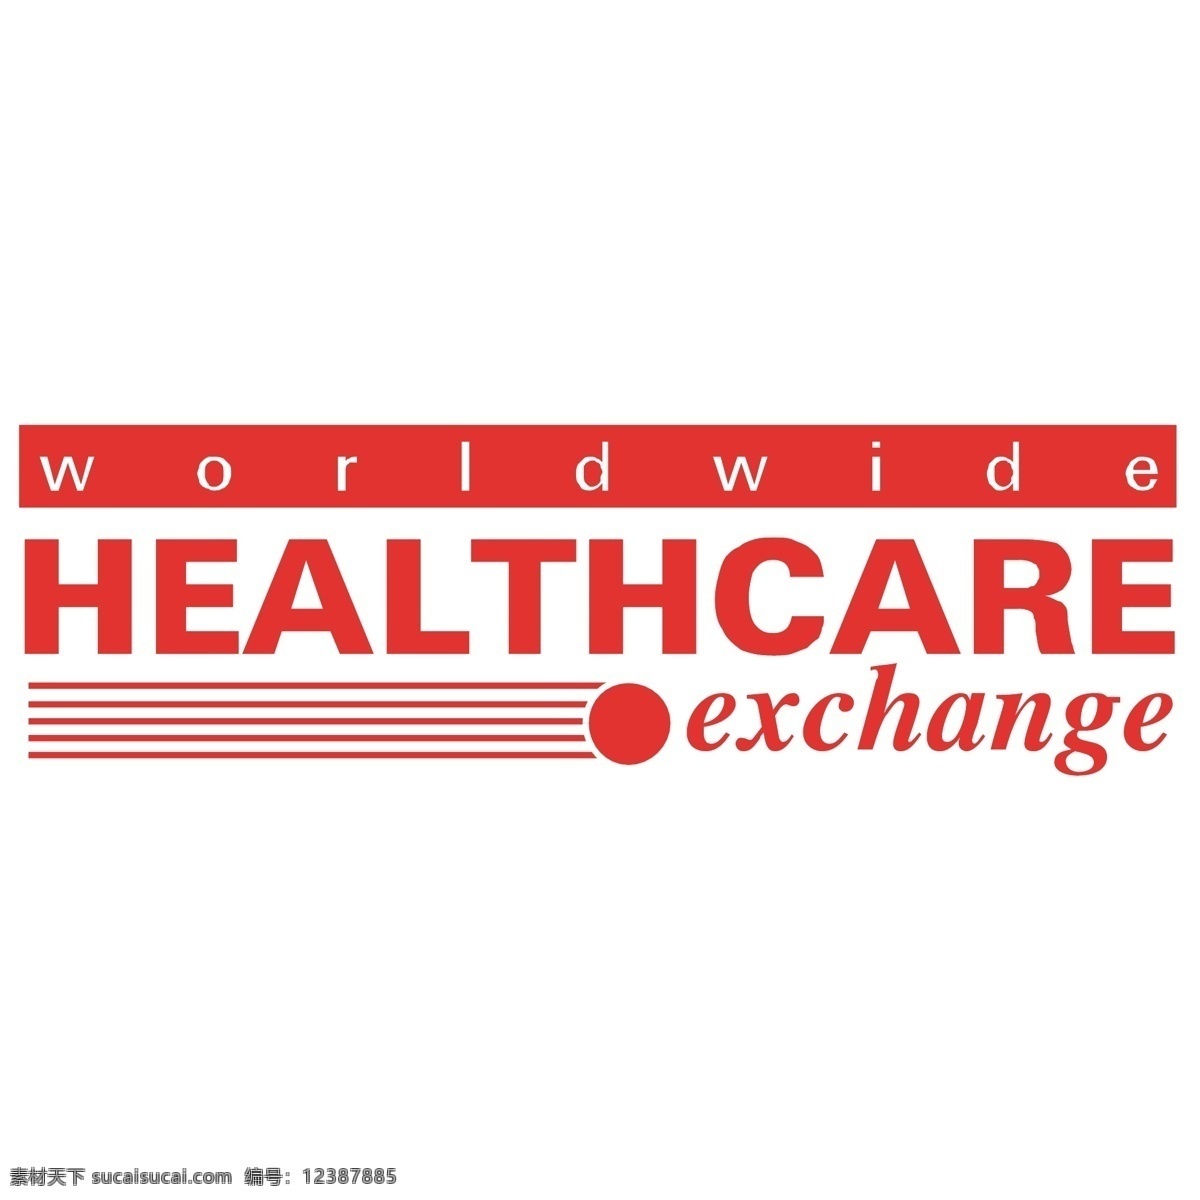 全球医疗交换 保健 医疗保健 在世界范围内 全球 范围 内 交换 载体 交换图像 矢量 图像 自由 交换的载体 外汇局 卫生设计 免费医疗 建筑家居